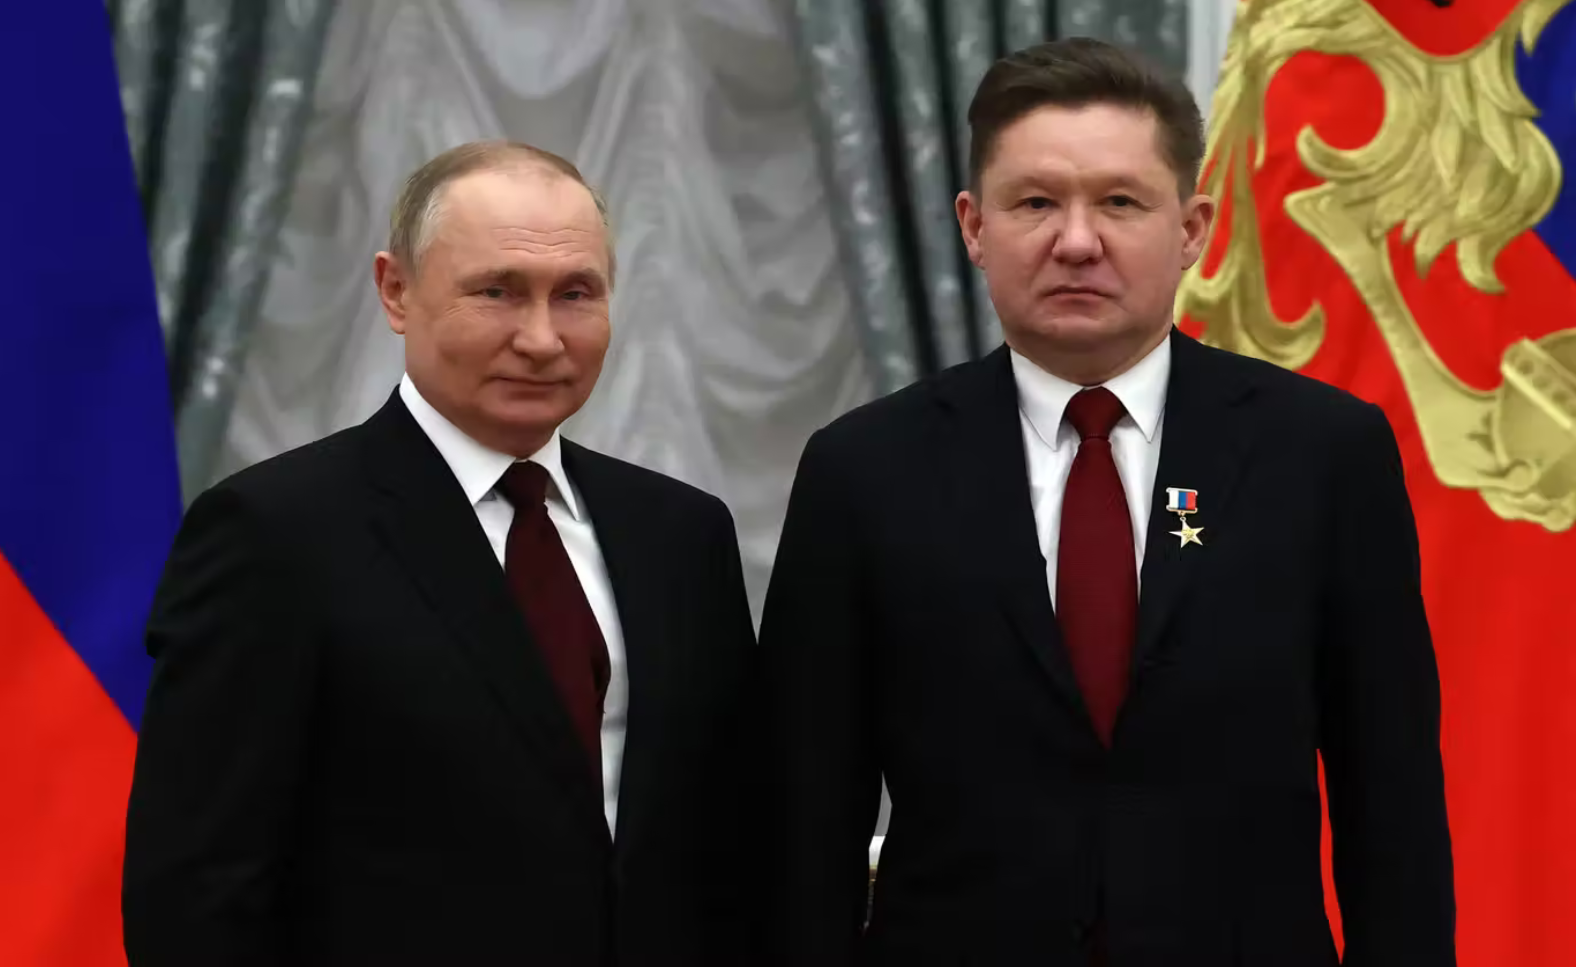 فلاديمير بوتين يقف لالتقاط صورة بجانب الرئيس التنفيذي لـ"غازبروم" أليكسي ميلر بعدما منحه لقب "بطل العمل في روسيا الفيدرالية" خلال احتفال تكريم في الكرملين